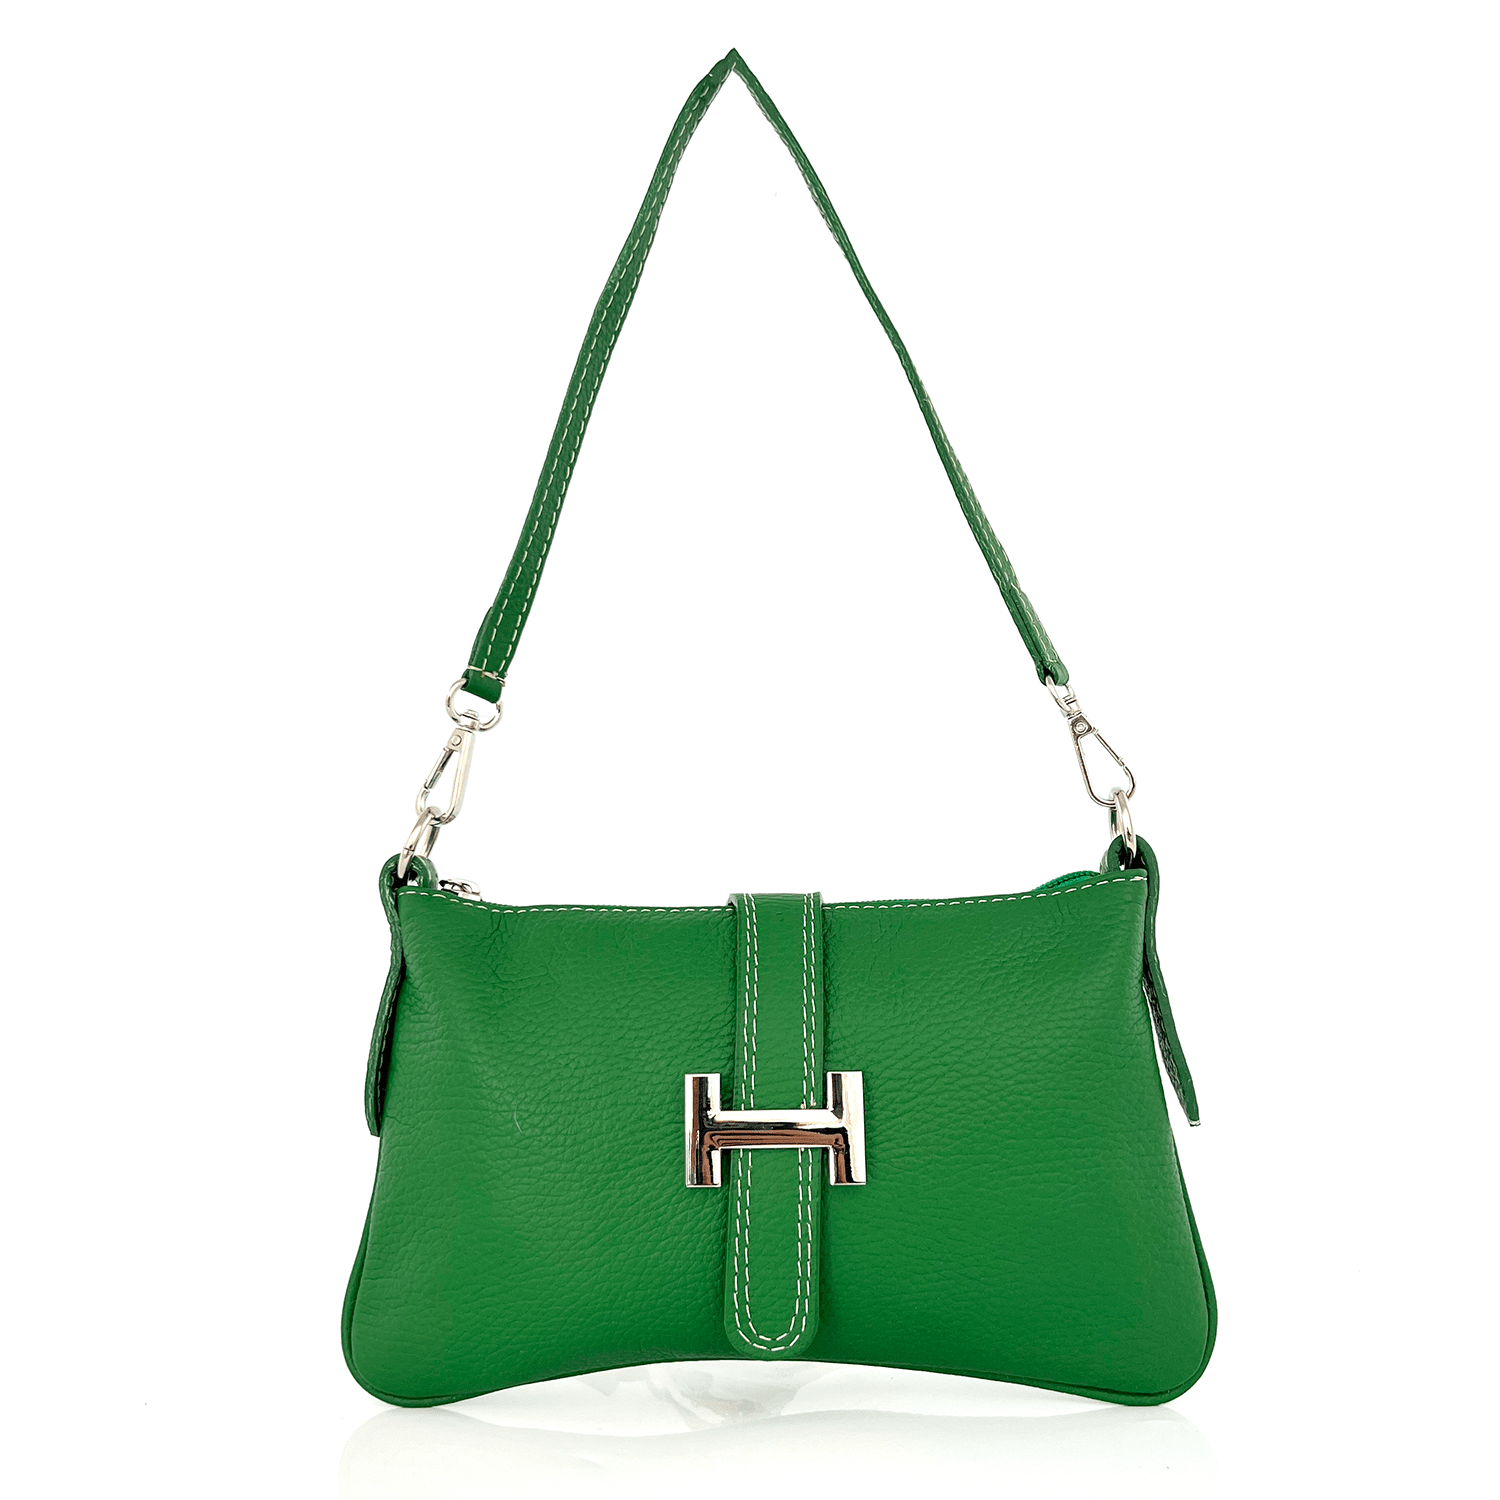 Дамска чантичка с 2 дръжки от естествена кожа Perla - зелена